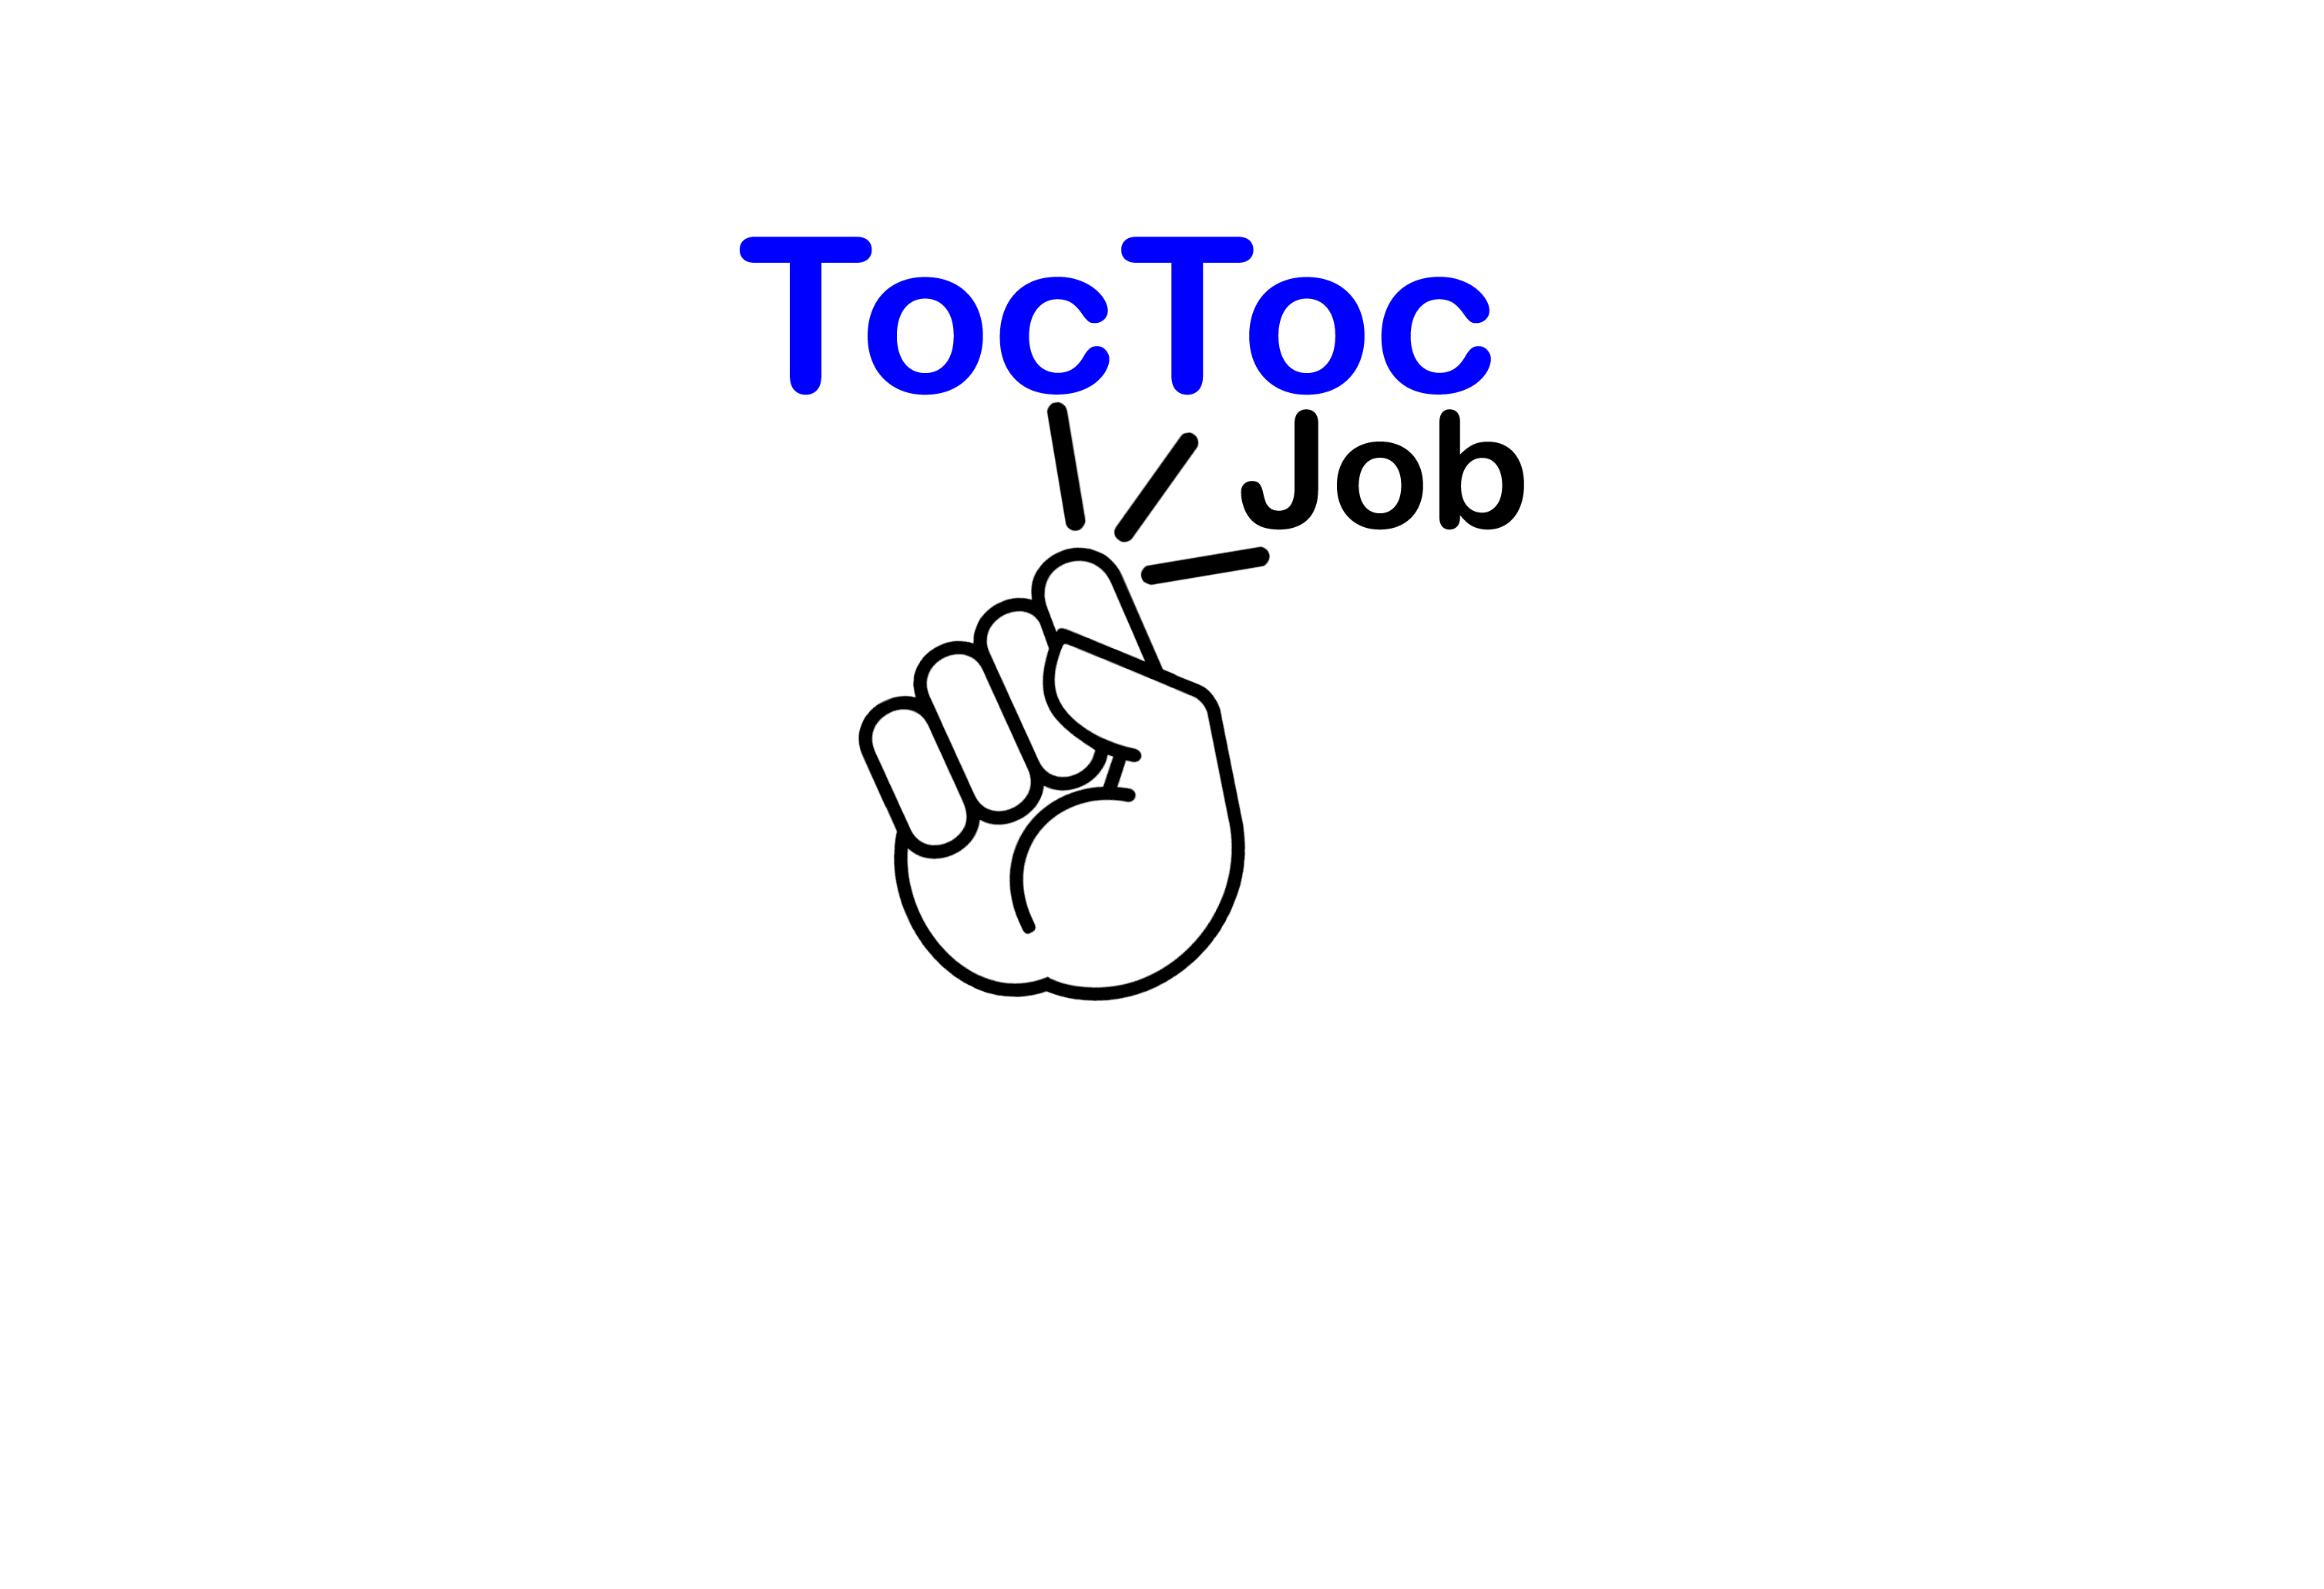 logo toctoc job